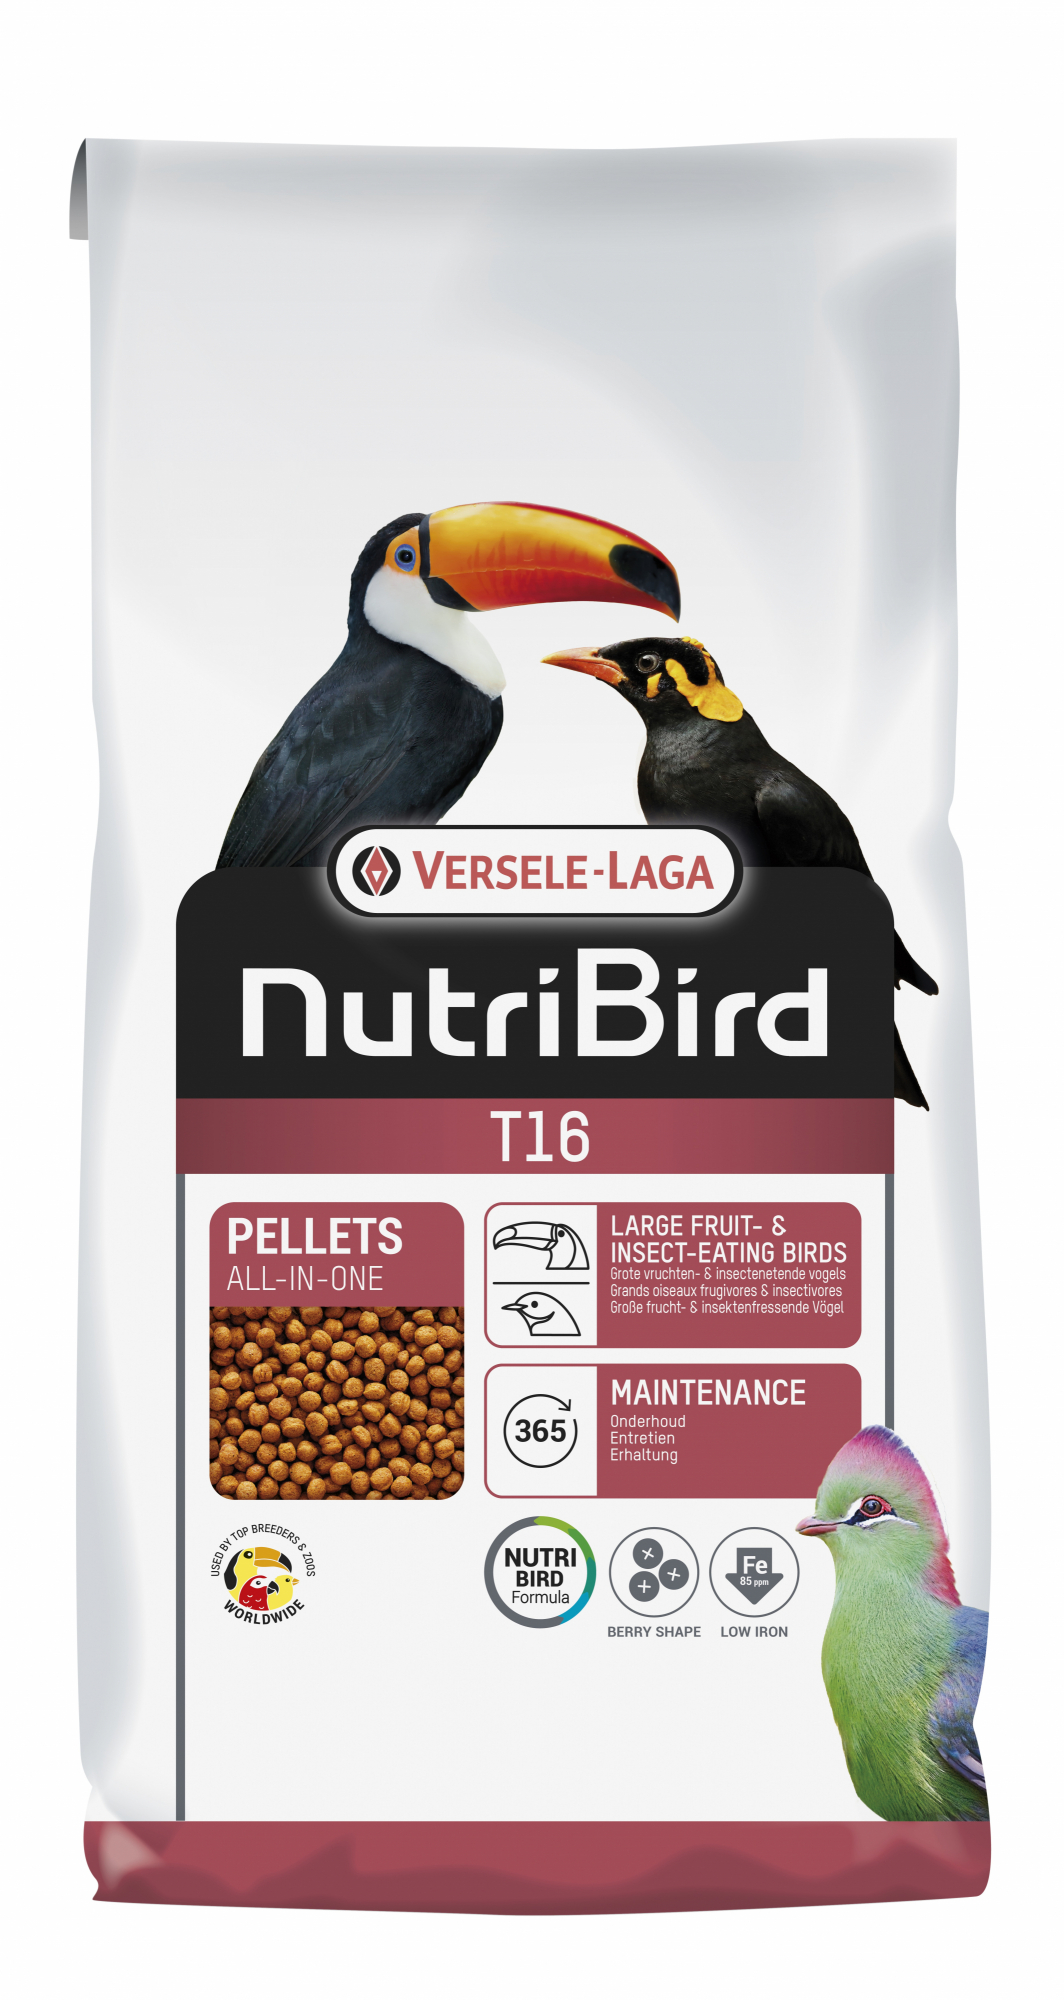 NutriBird T16 Original entretien pour toucans, touracos et autres grands frugivores